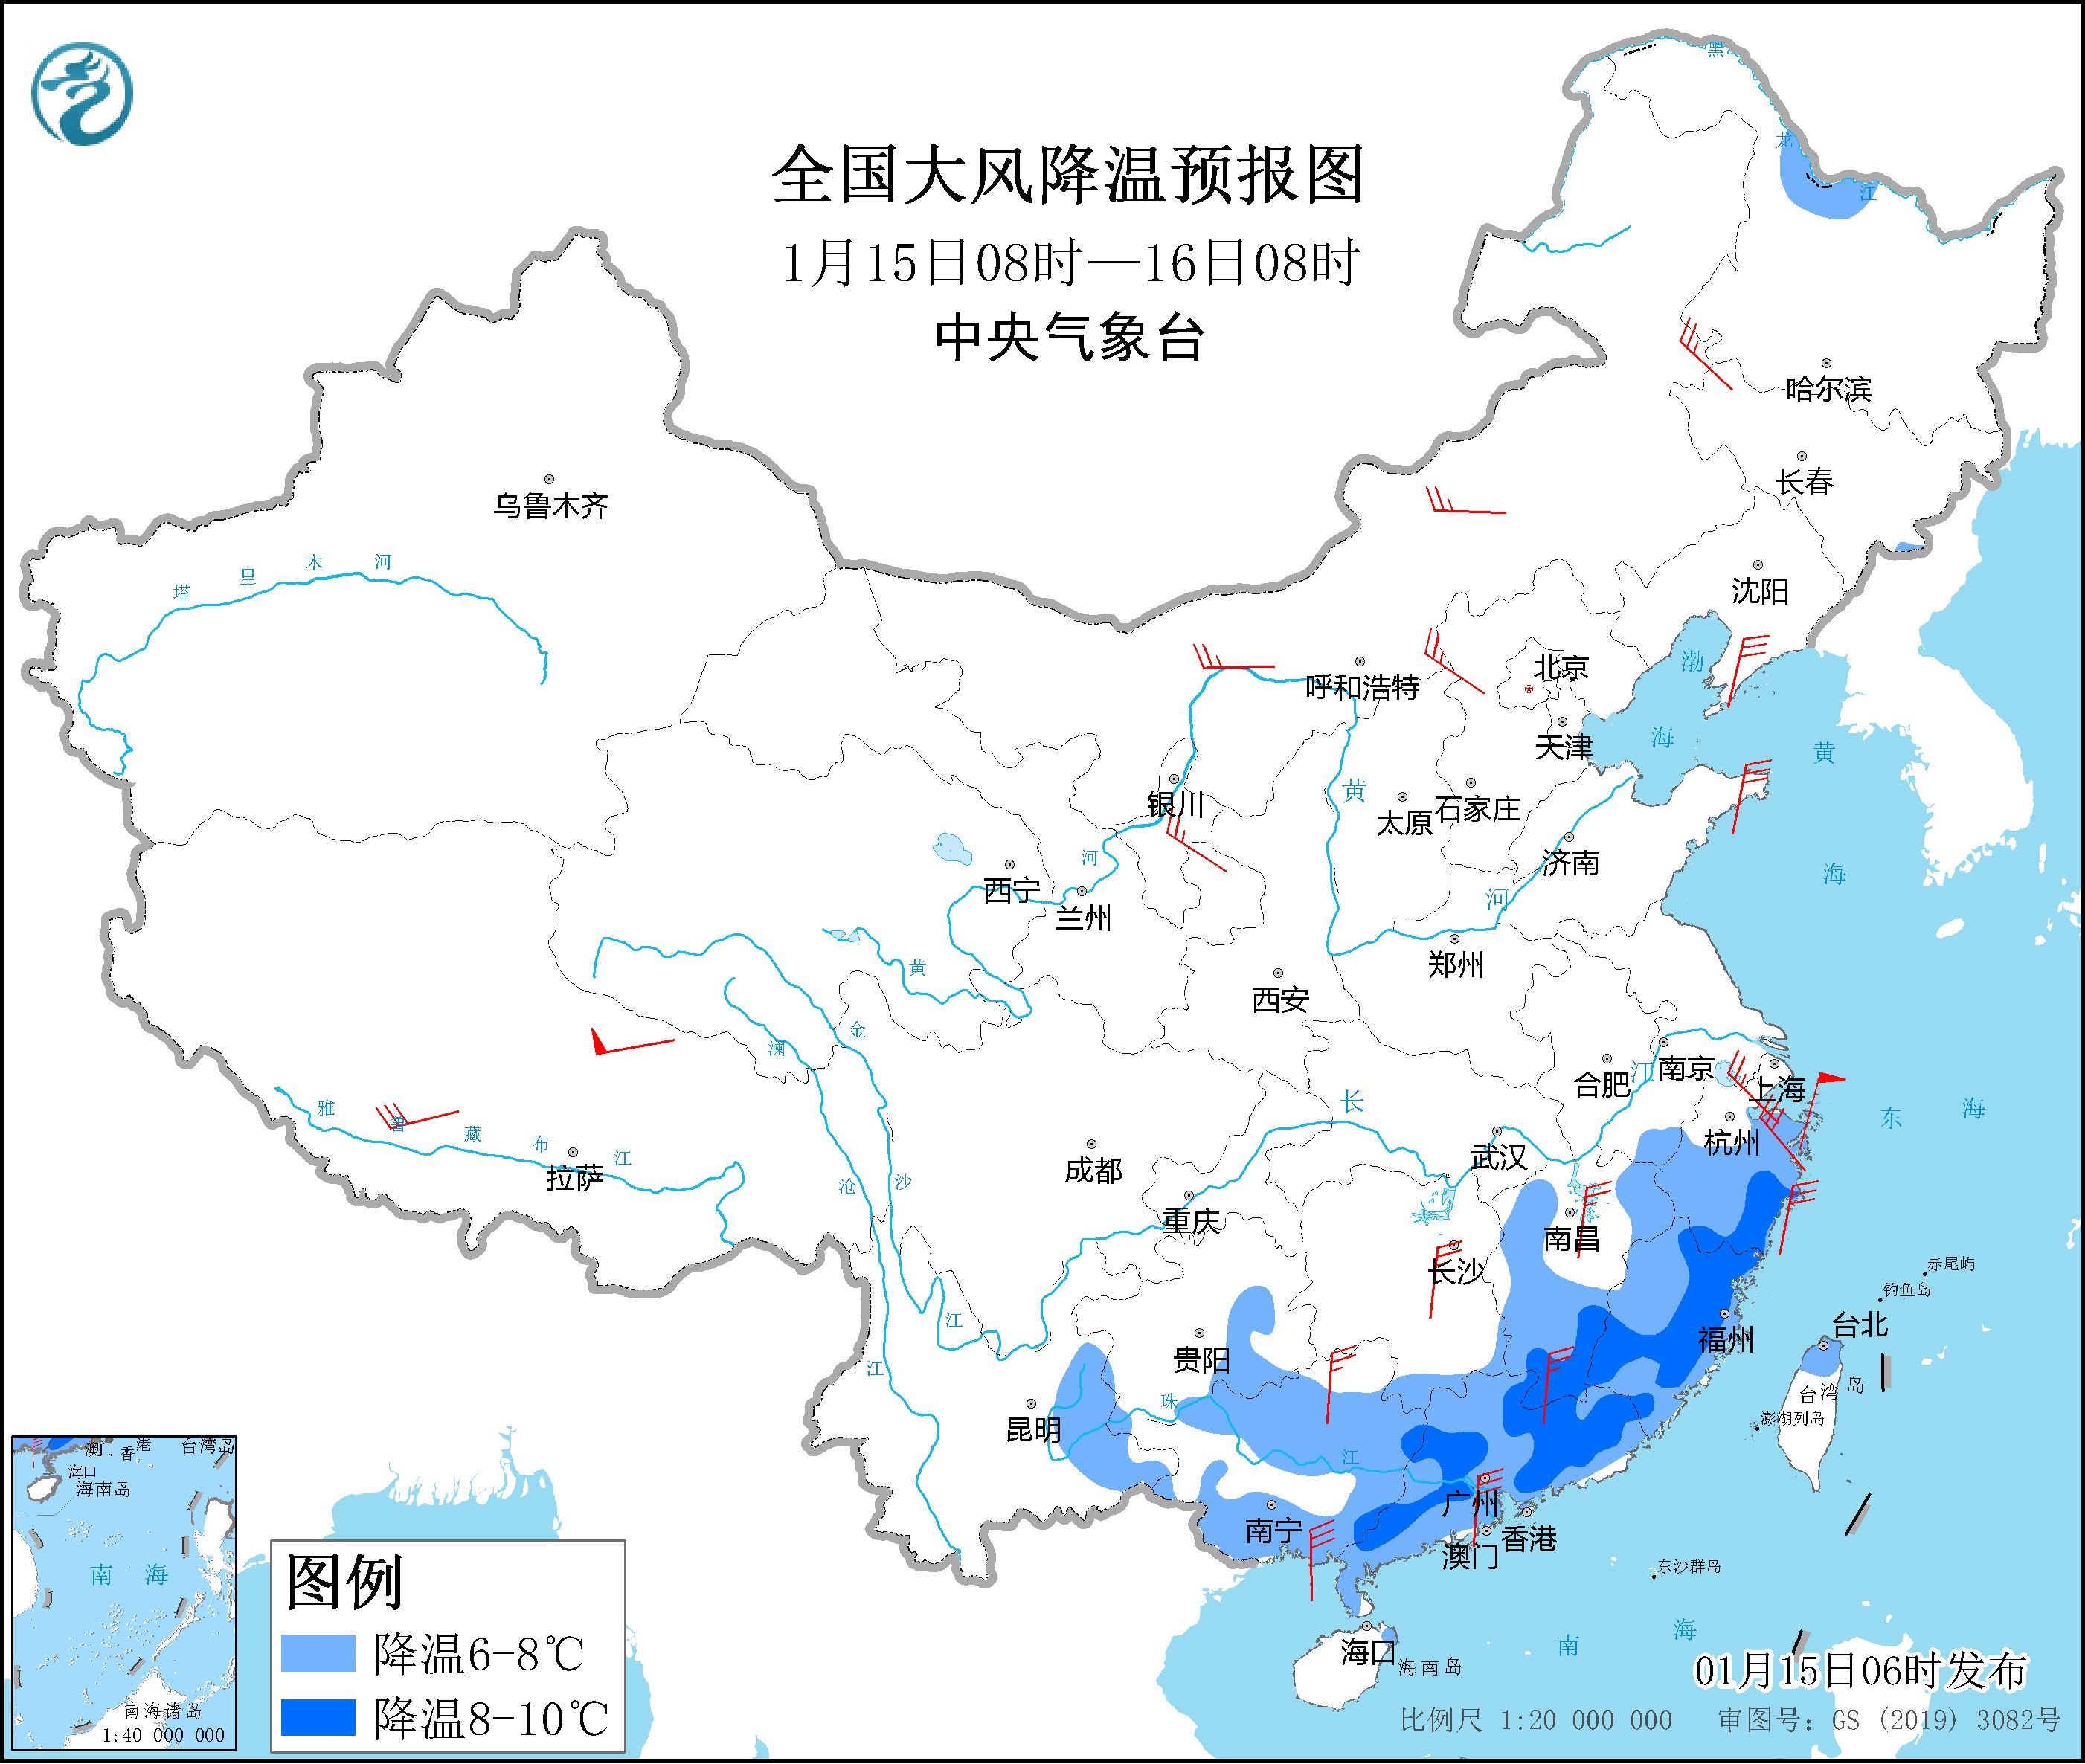 盛煌娱乐平台：中央气象台发布寒潮蓝色预警 西南、江南、华南等局部地区将